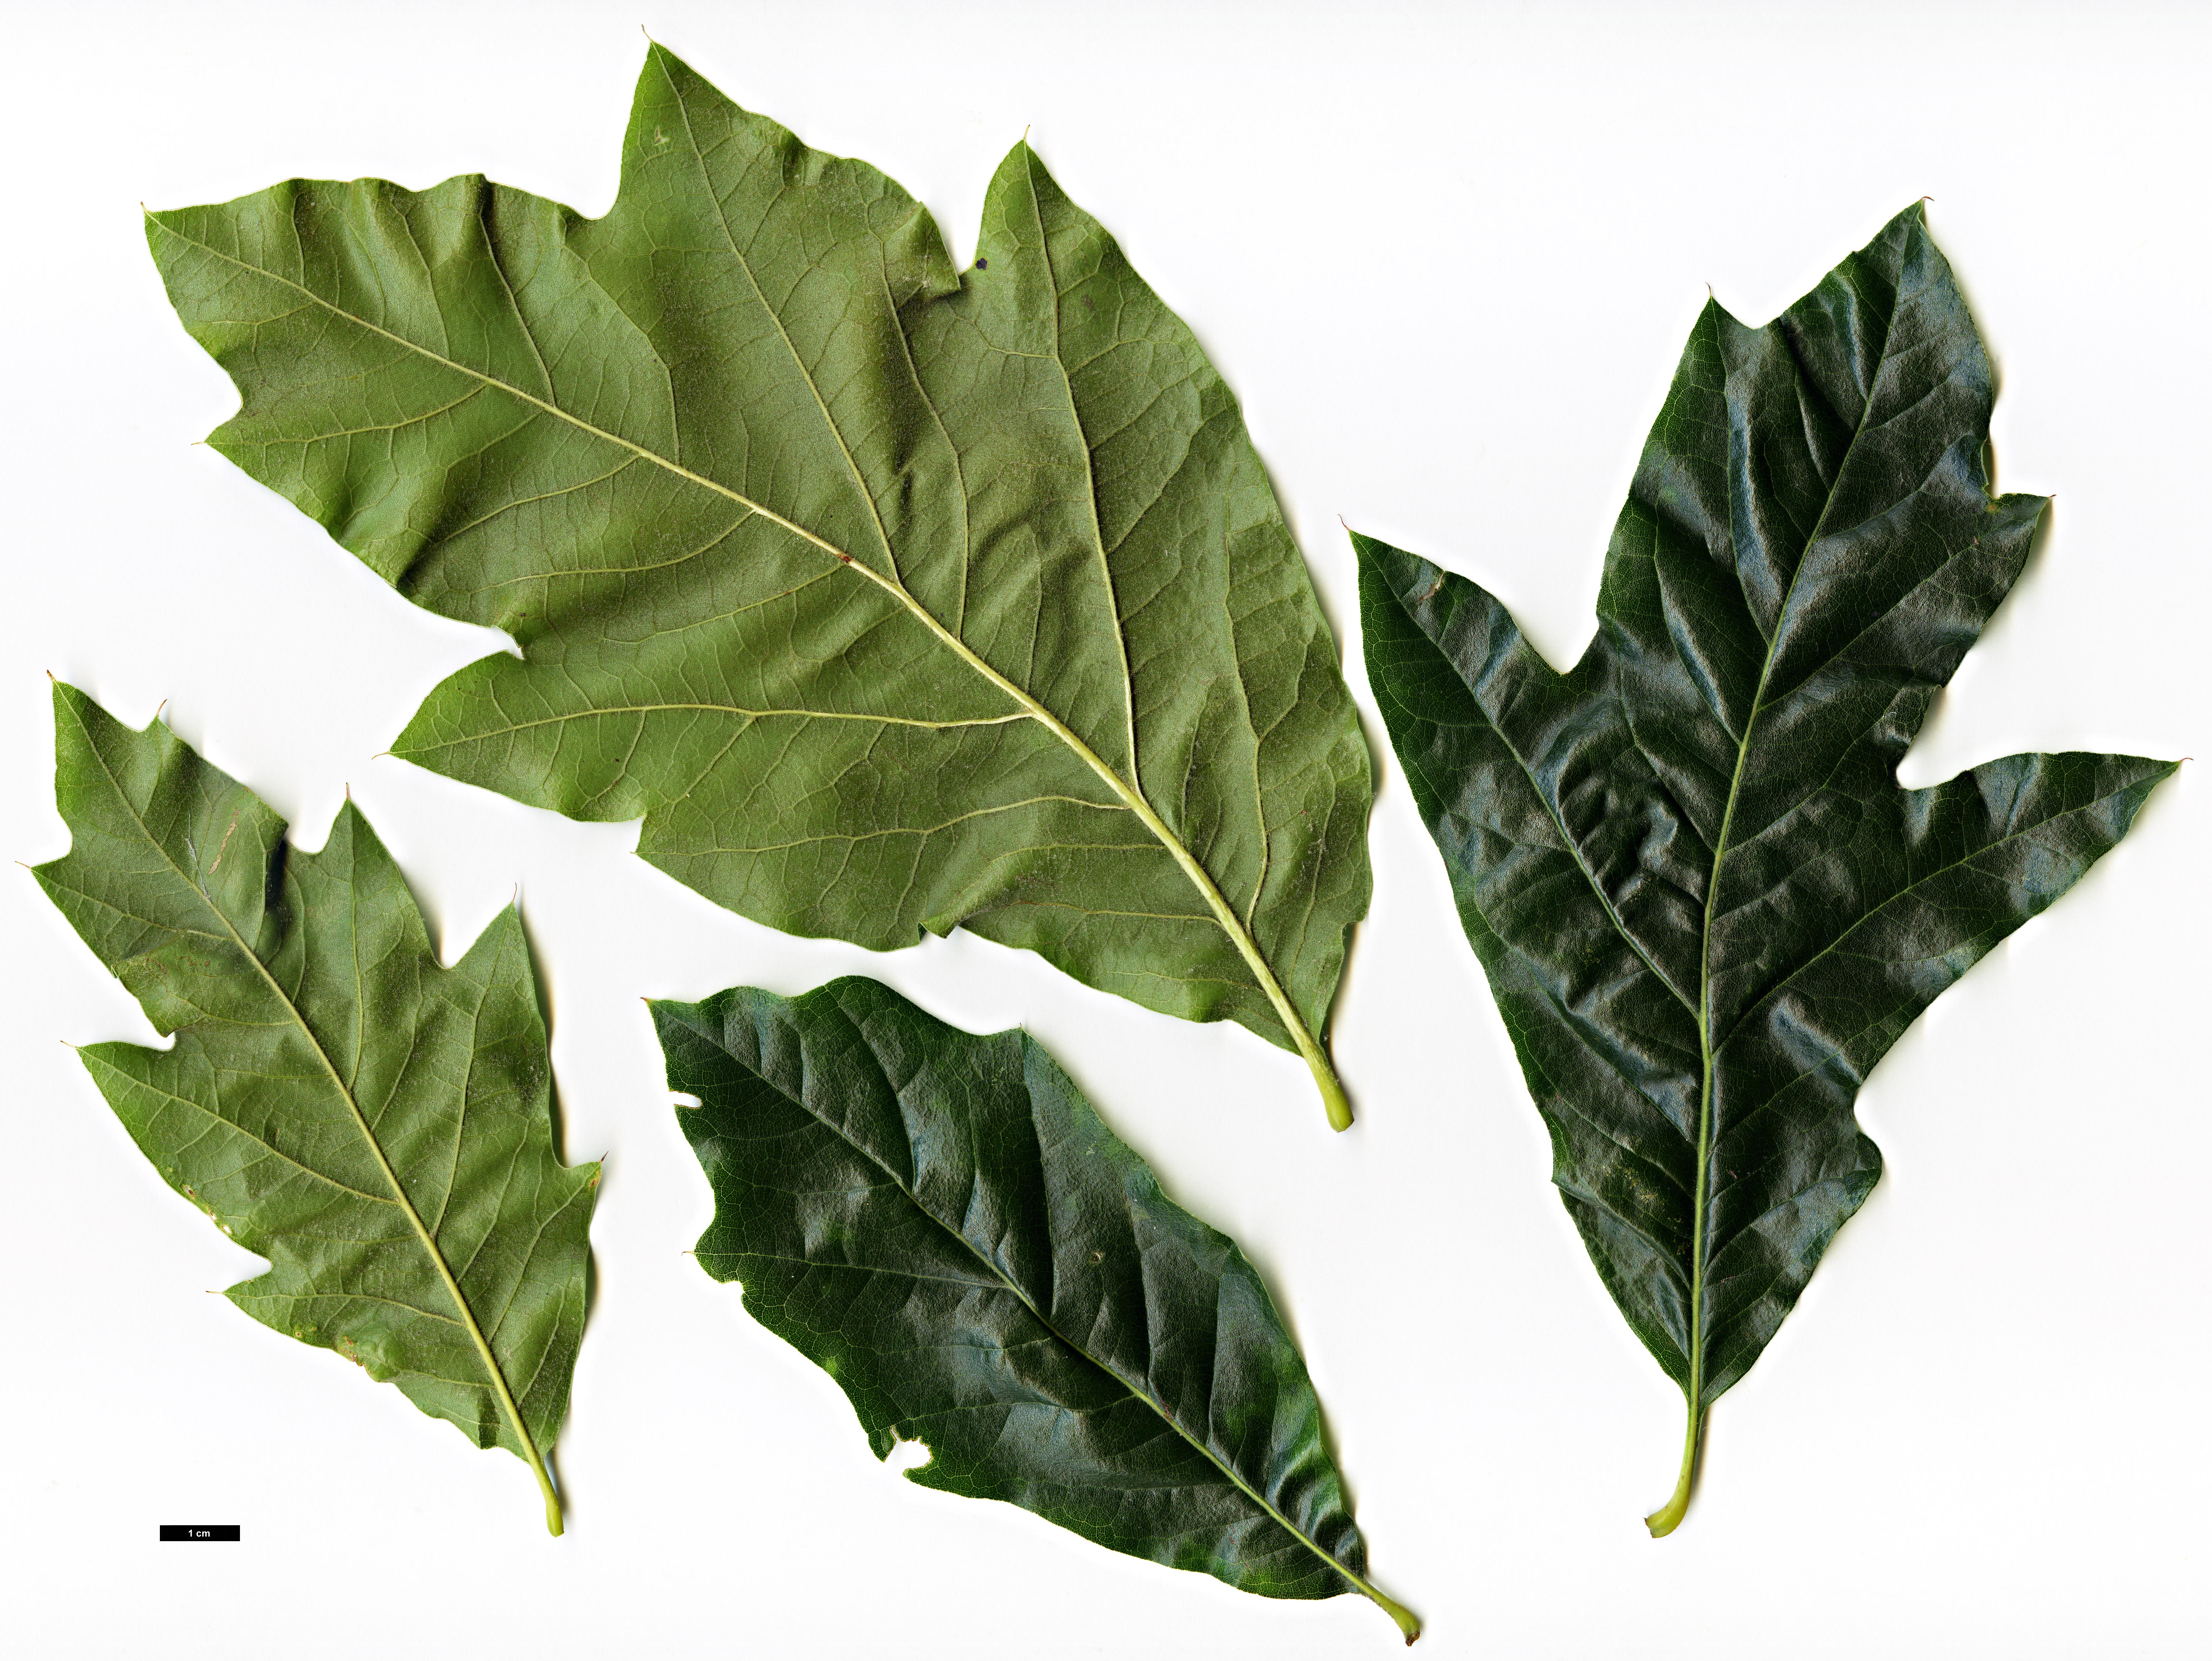 High resolution image: Family: Fagaceae - Genus: Quercus - Taxon: ×tridentata (Q.imbricaria × Q.marilandica)